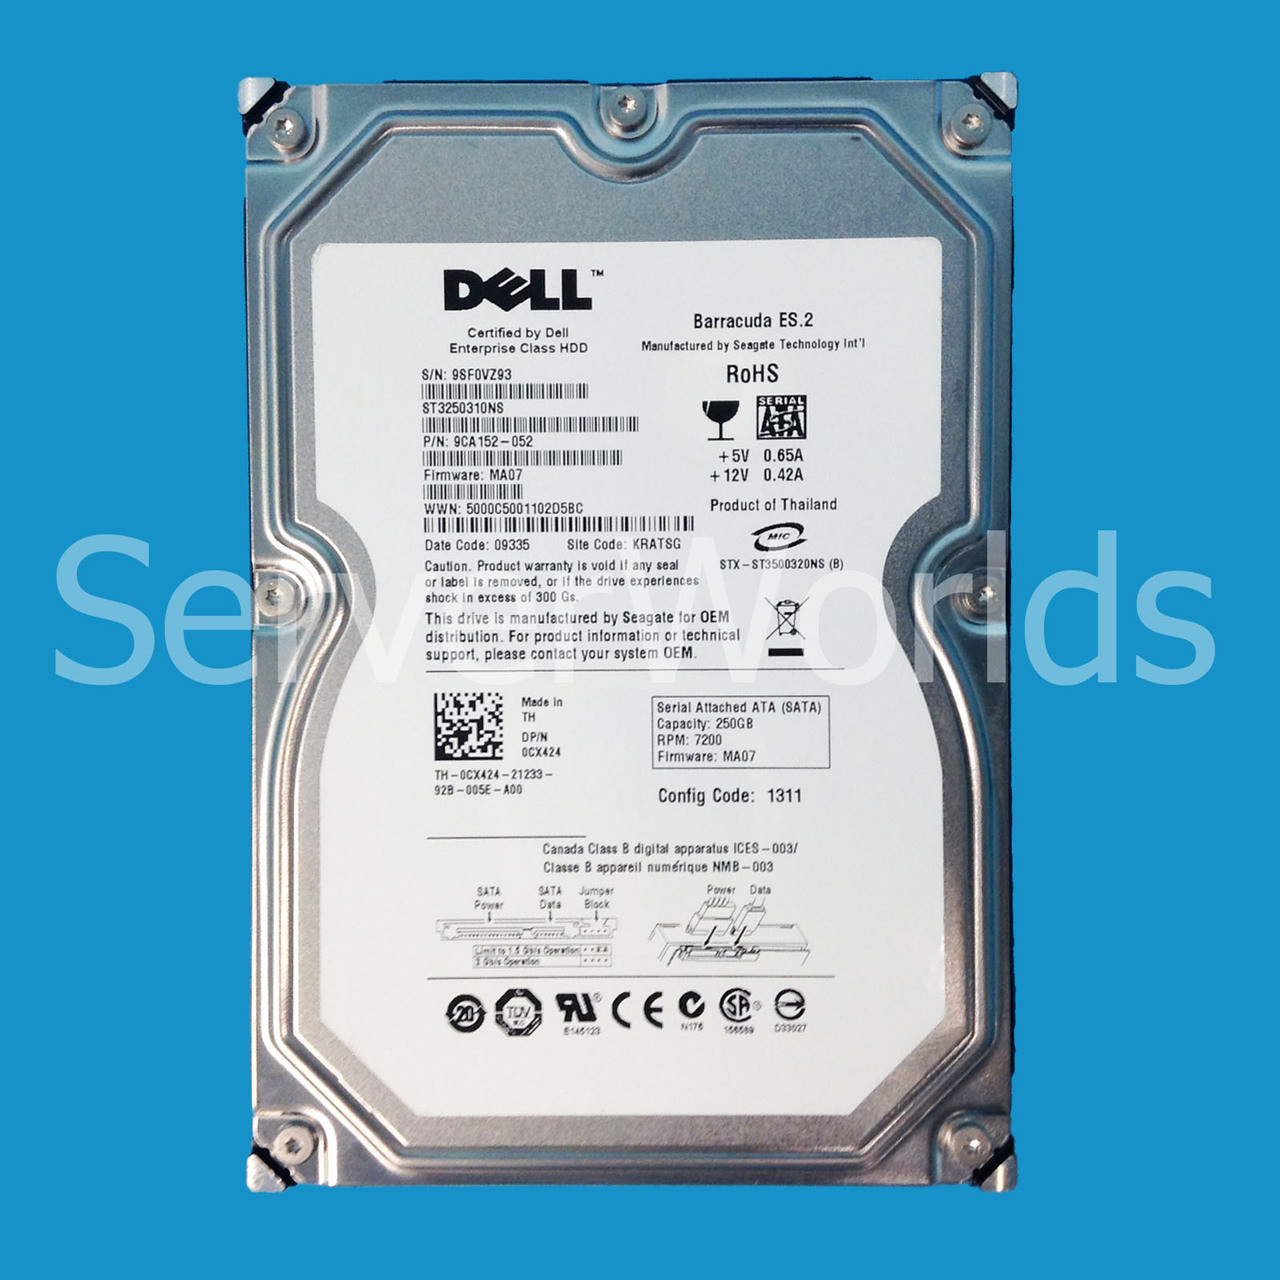 Dell CX424 250GB SATA 7.2K 3GBPS ES 3.5" Drive 9CA152-052 ST3250310NS